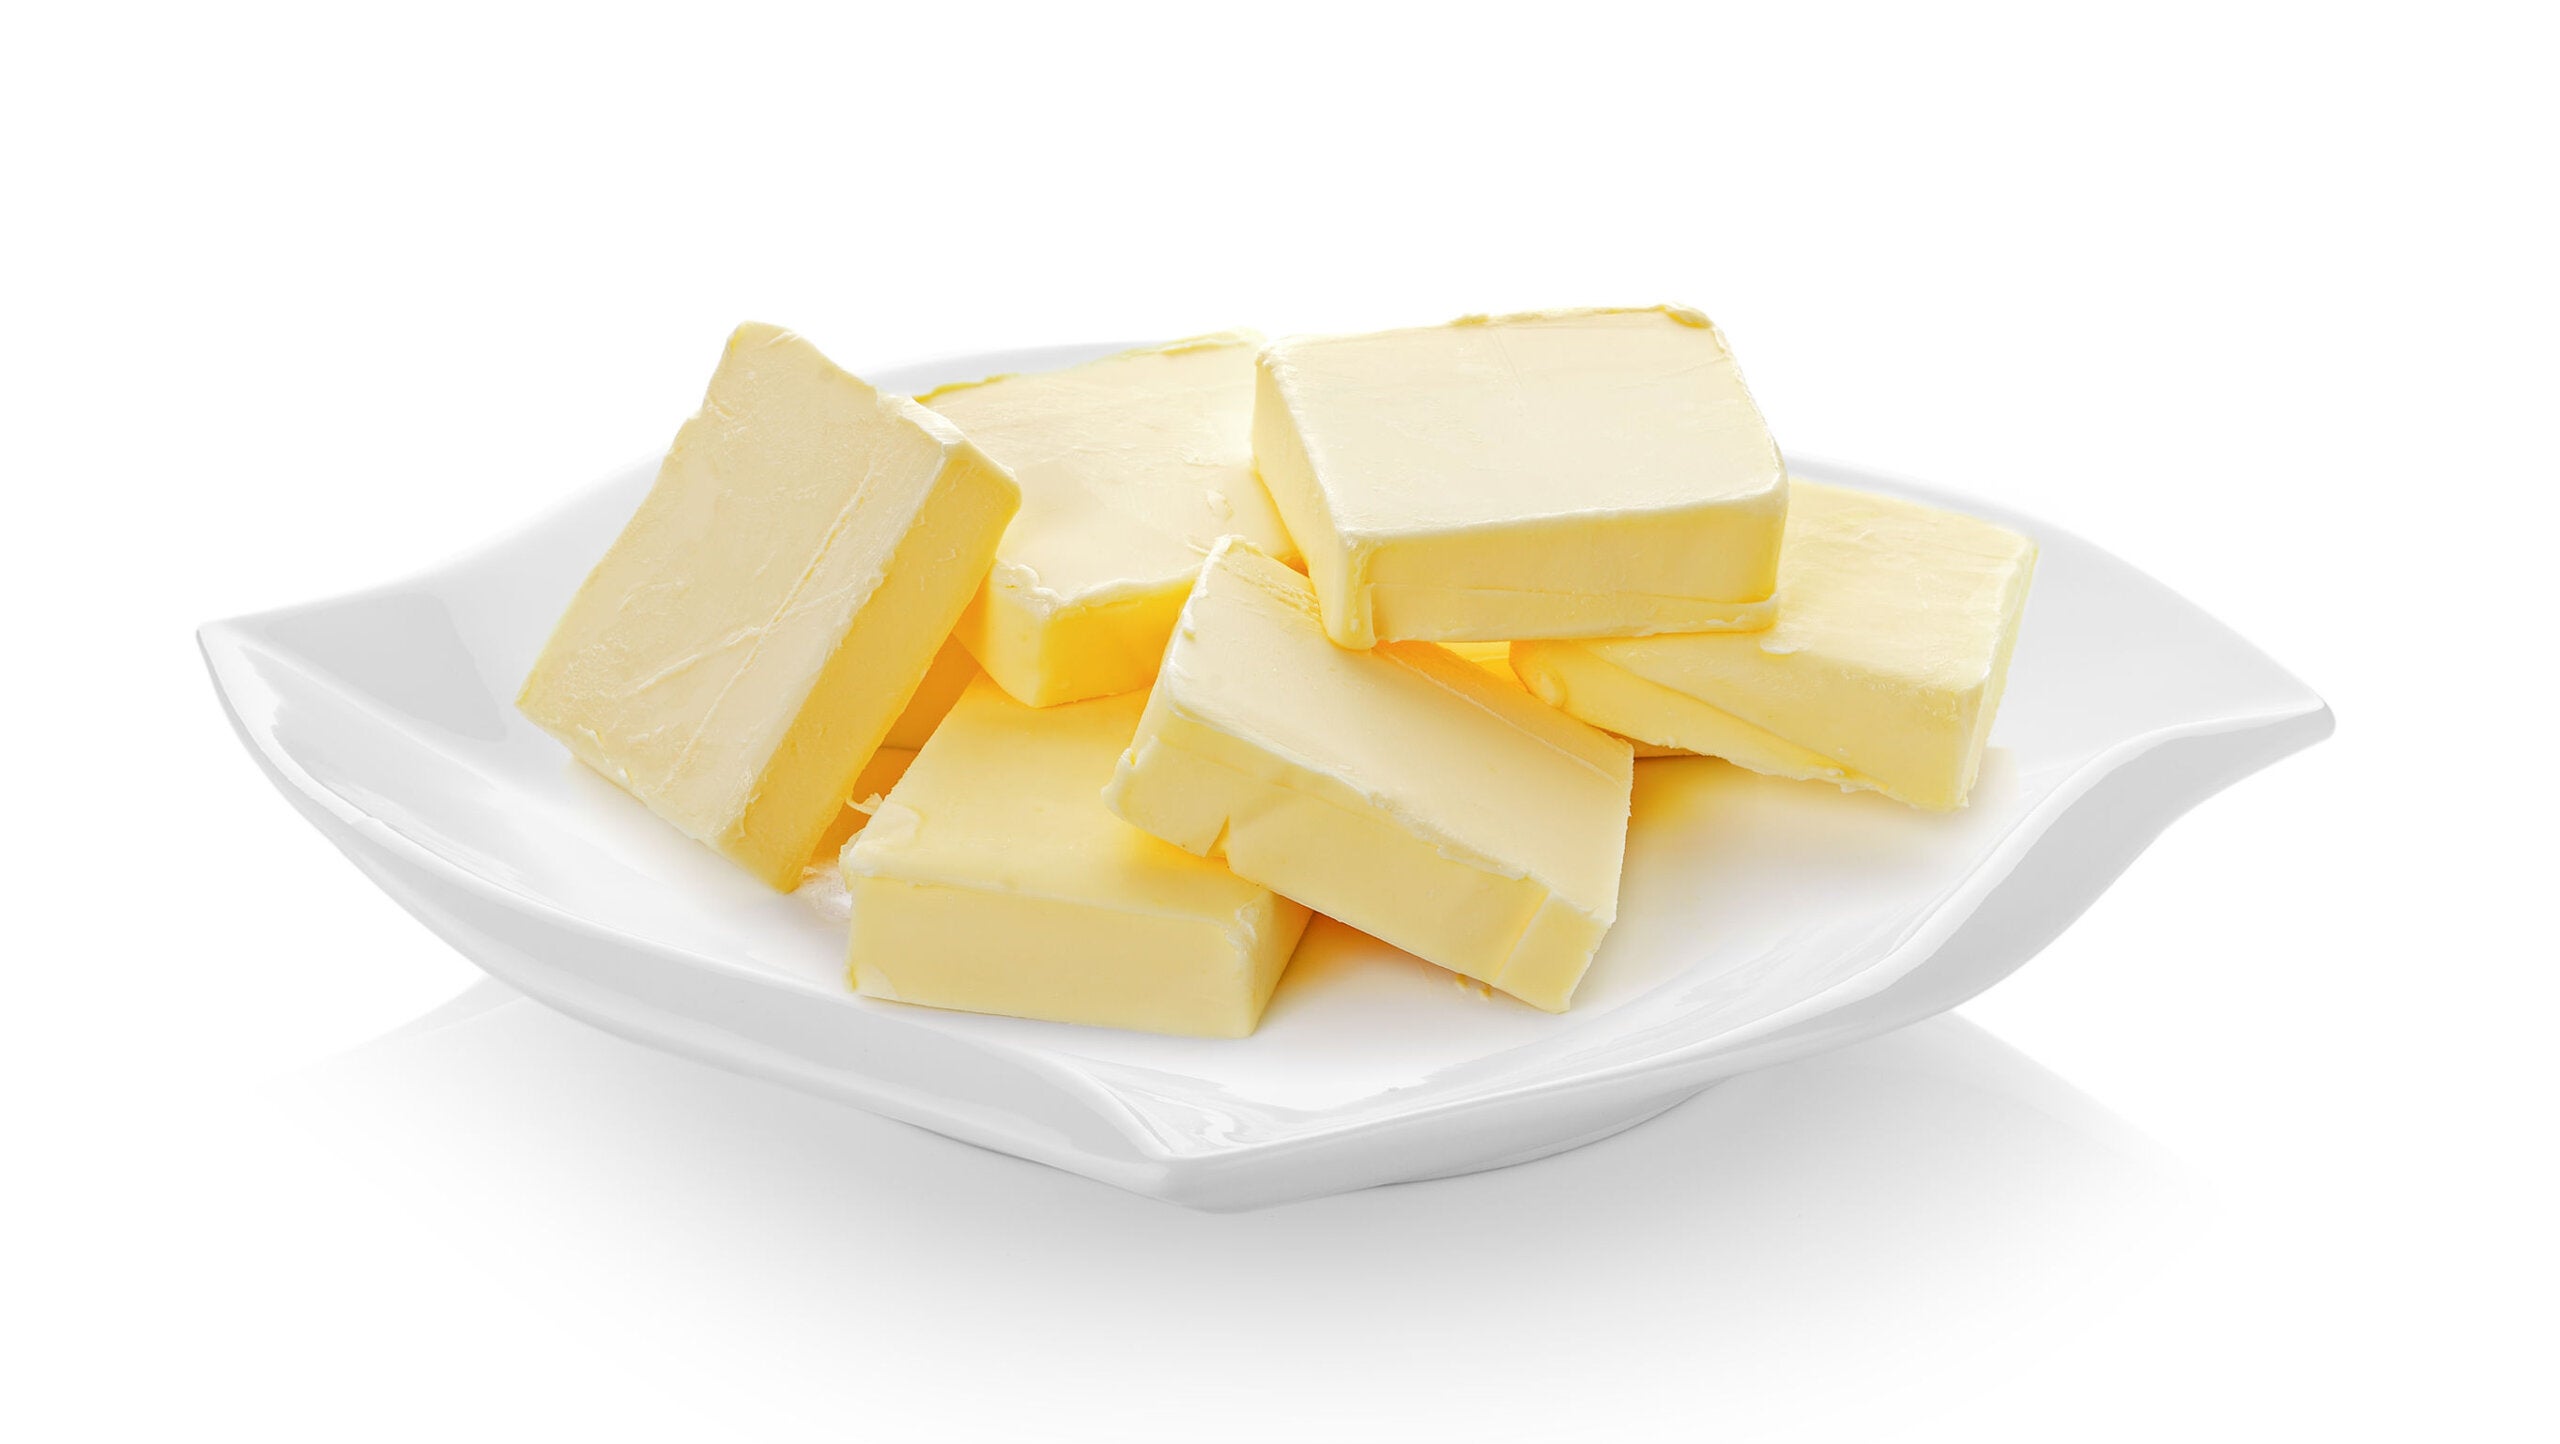 Mangiare burro può essere benefico per la tua salute, se sai come scegliere.